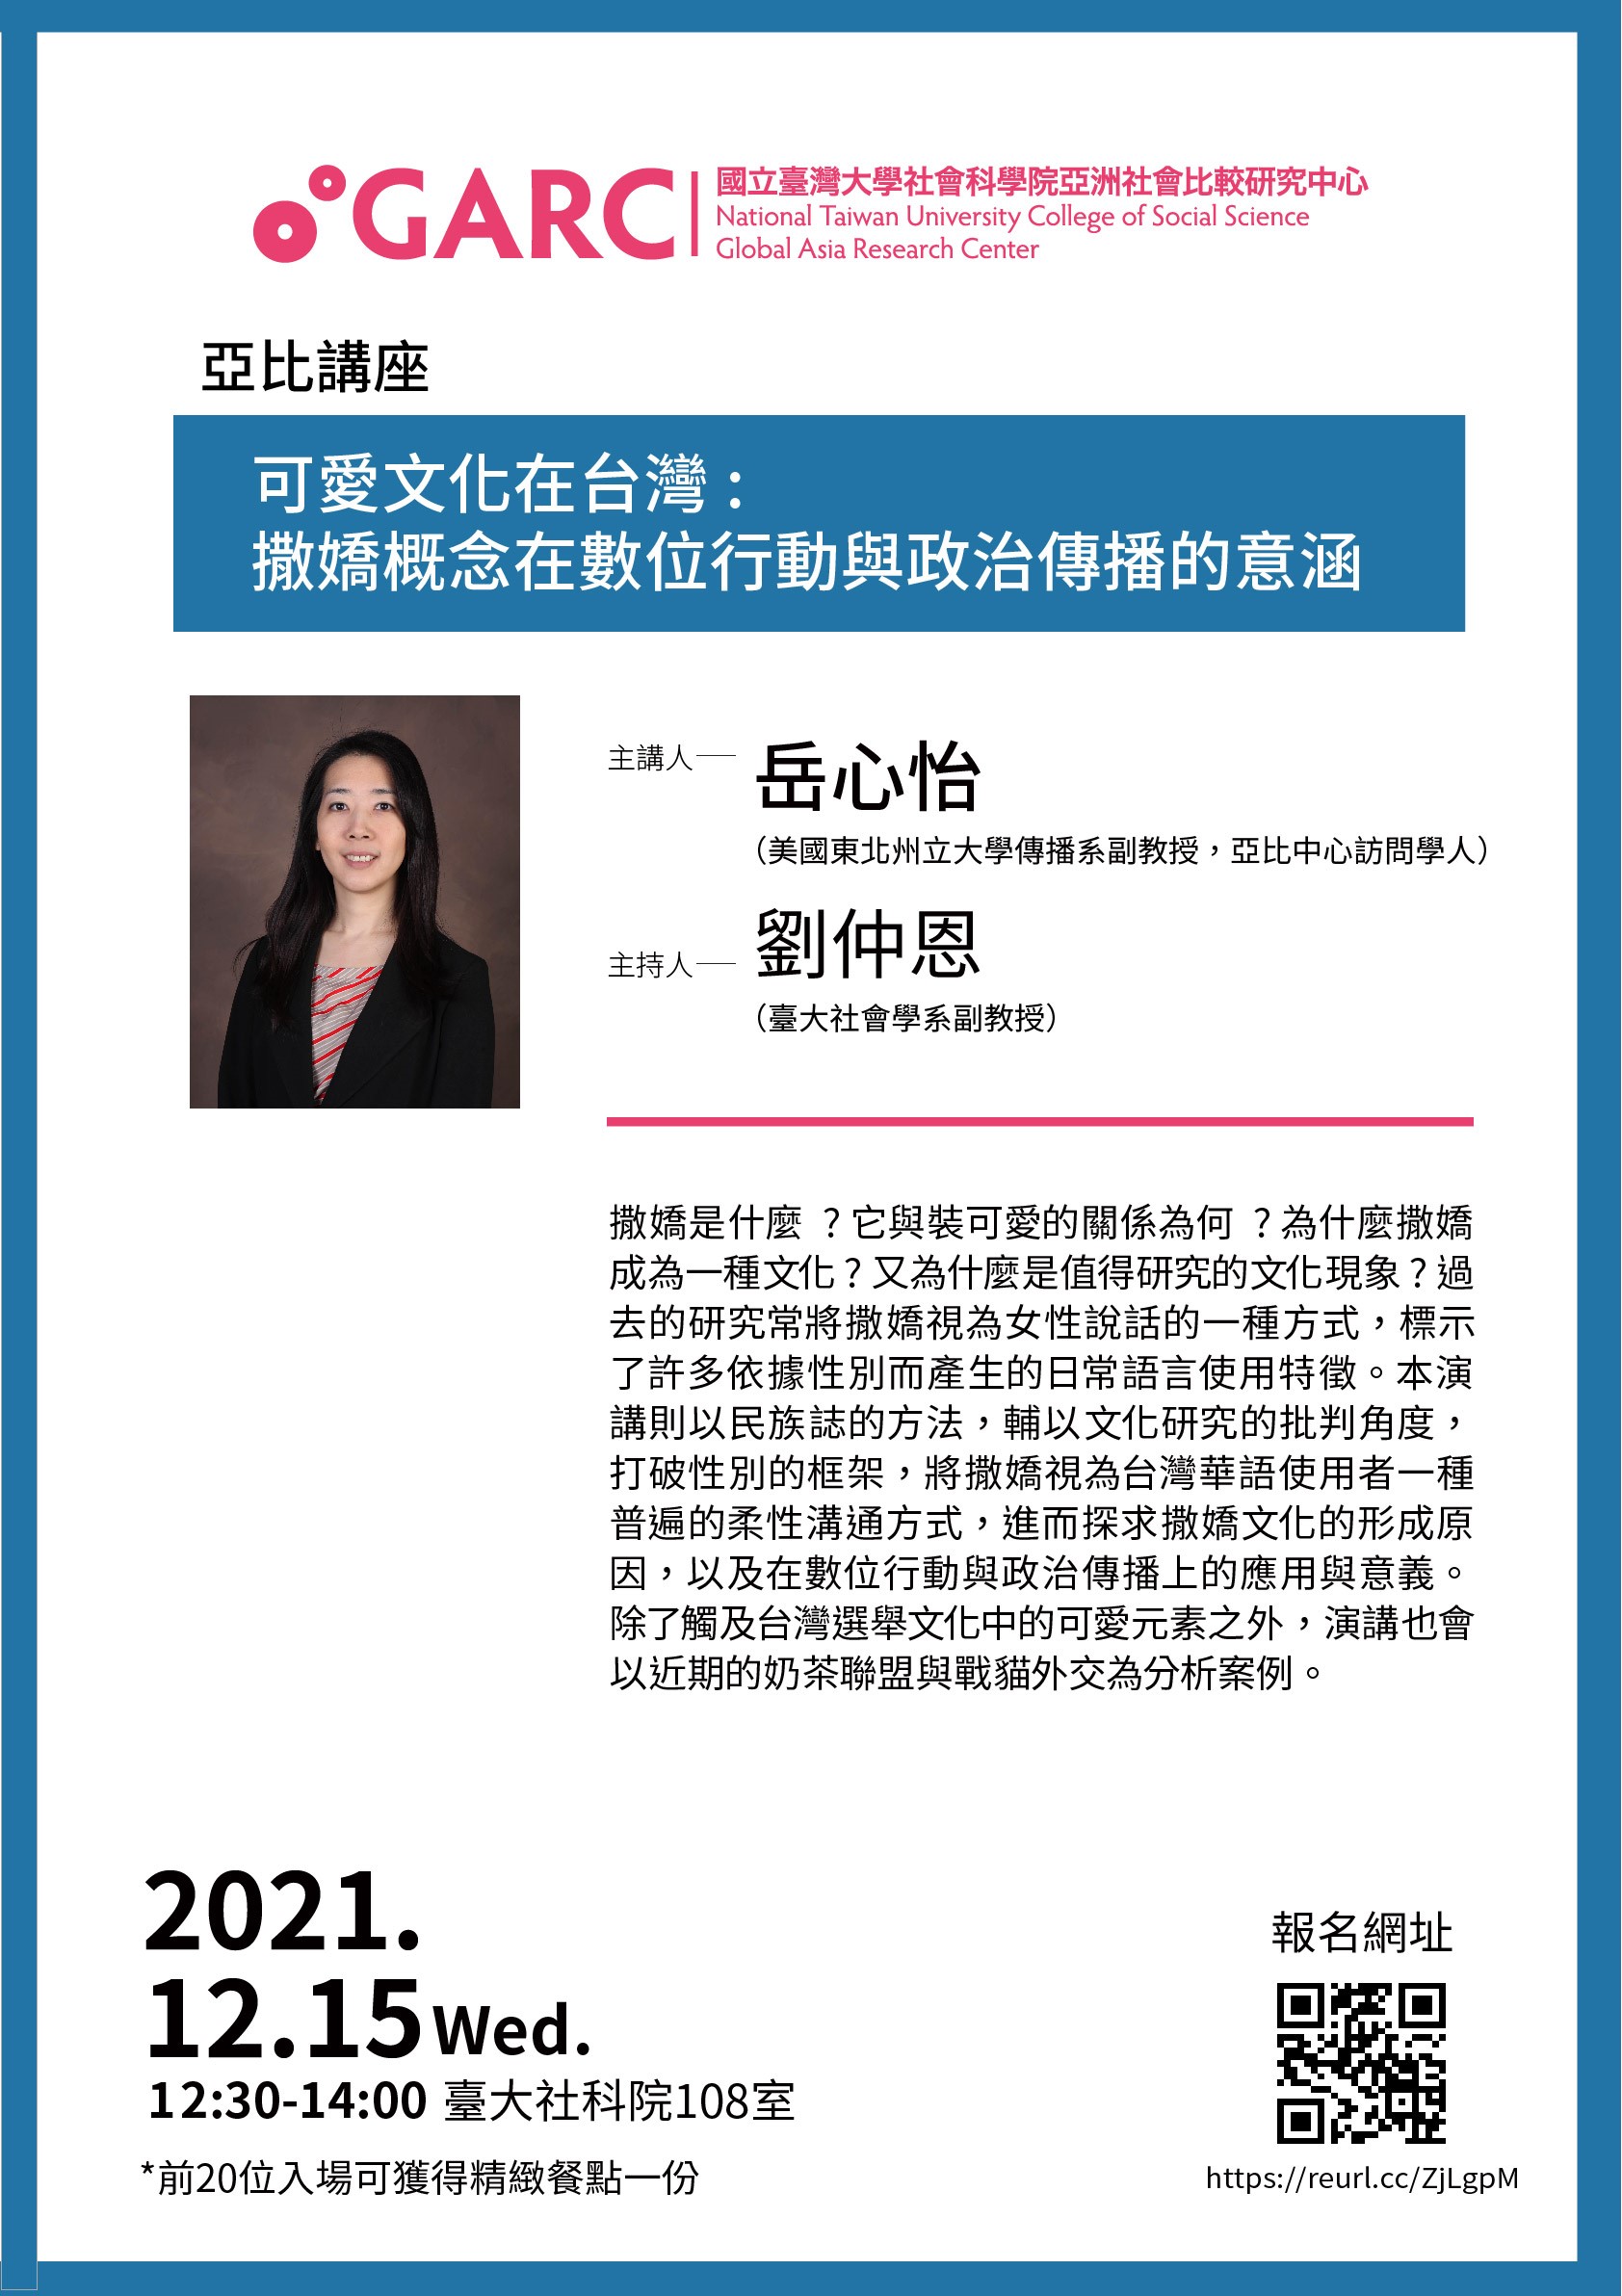 【活動資訊】2021.12.15可愛文化在台灣: 撒嬌概念在數位行動與政治傳播的意涵